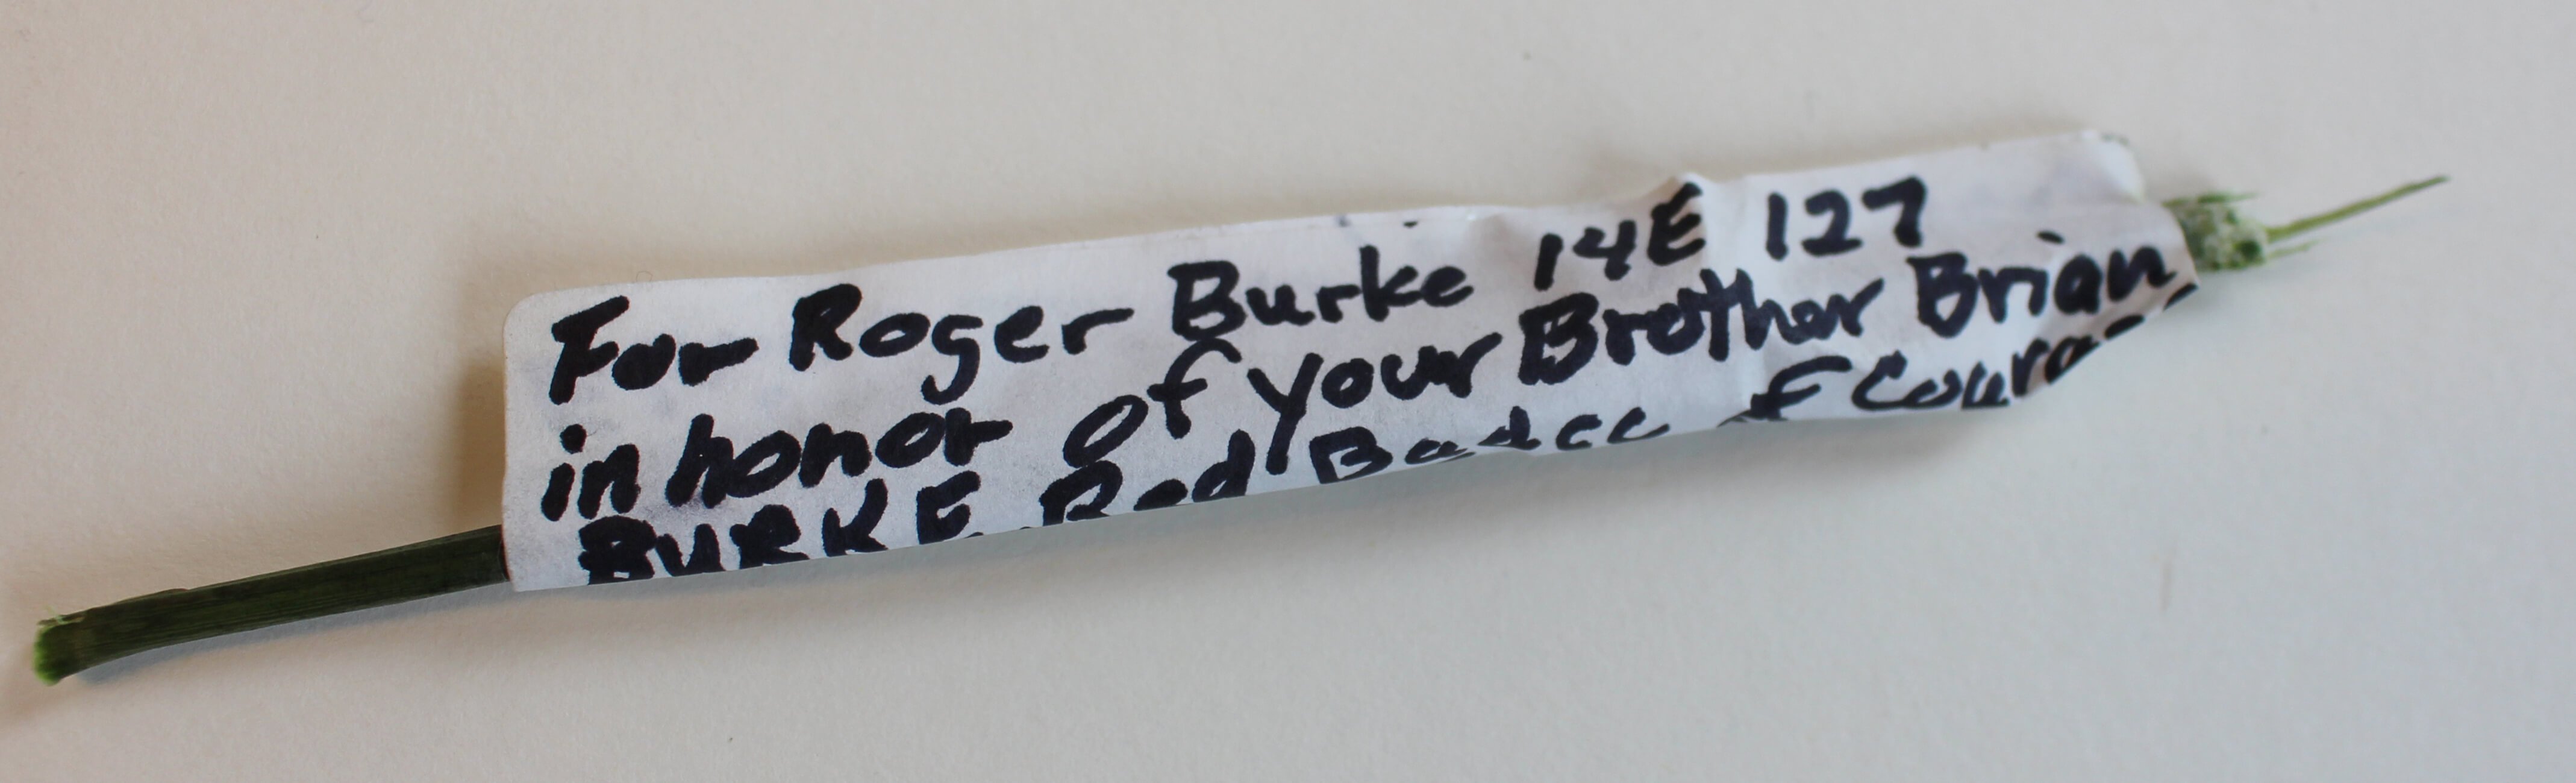 Rose stem with handwritten note for Roger Burke- 14E 127